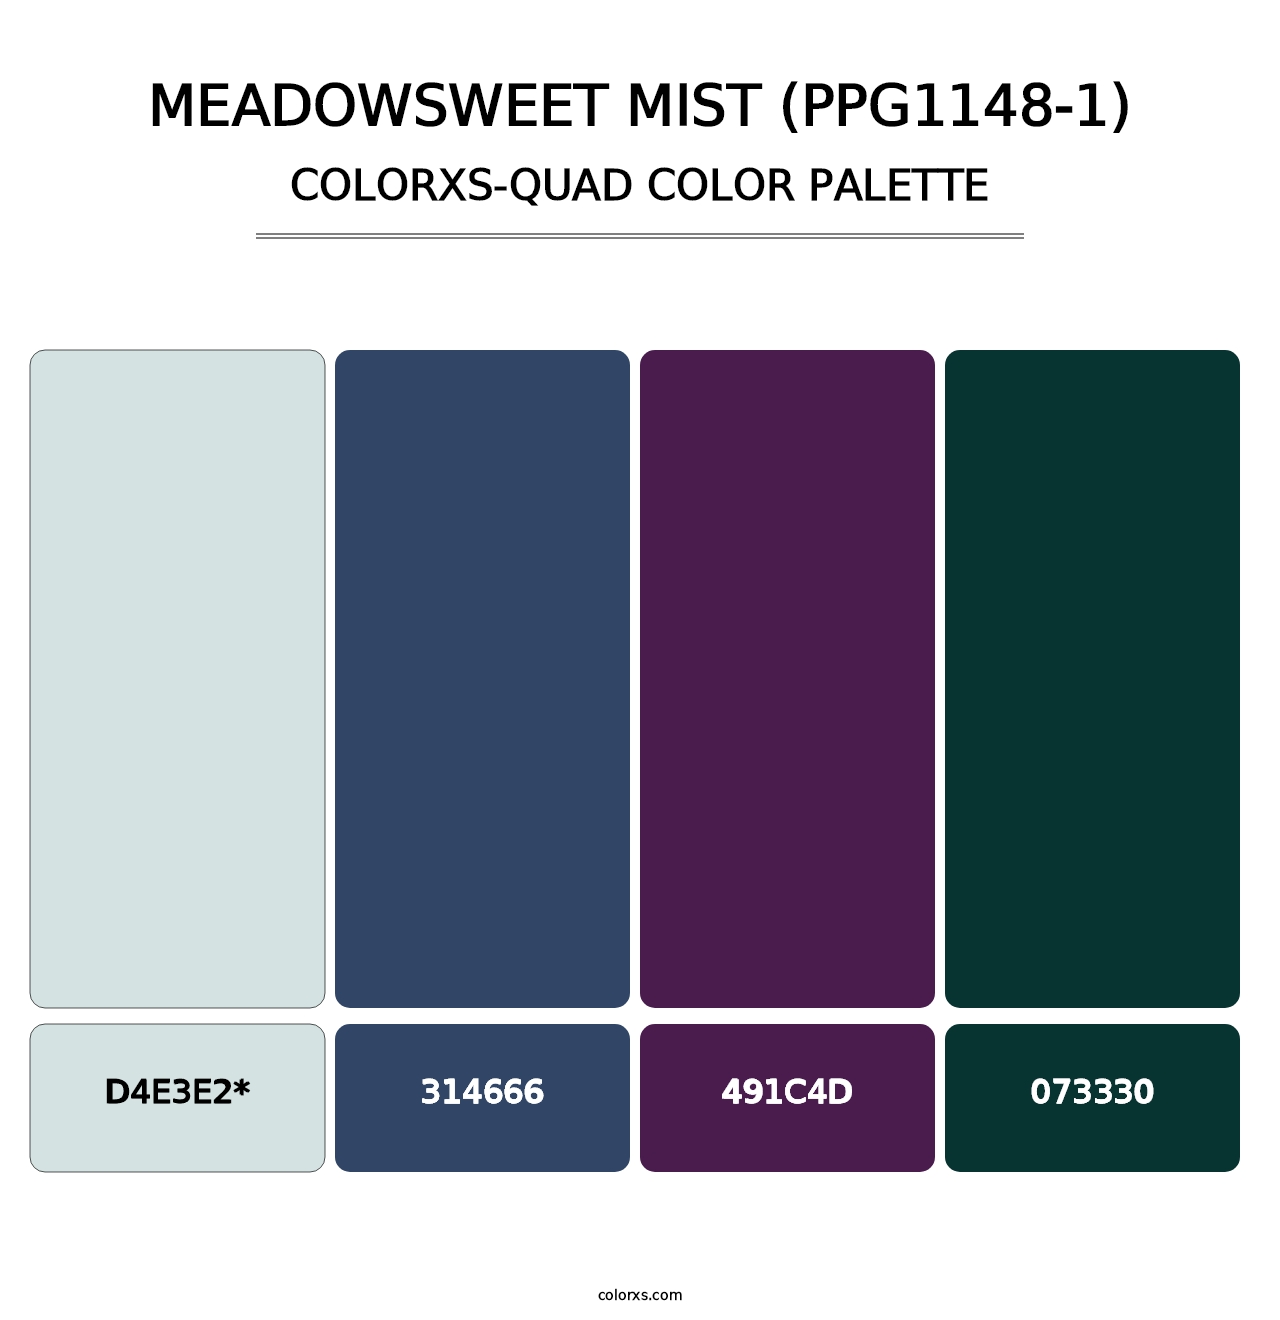 Meadowsweet Mist (PPG1148-1) - Colorxs Quad Palette